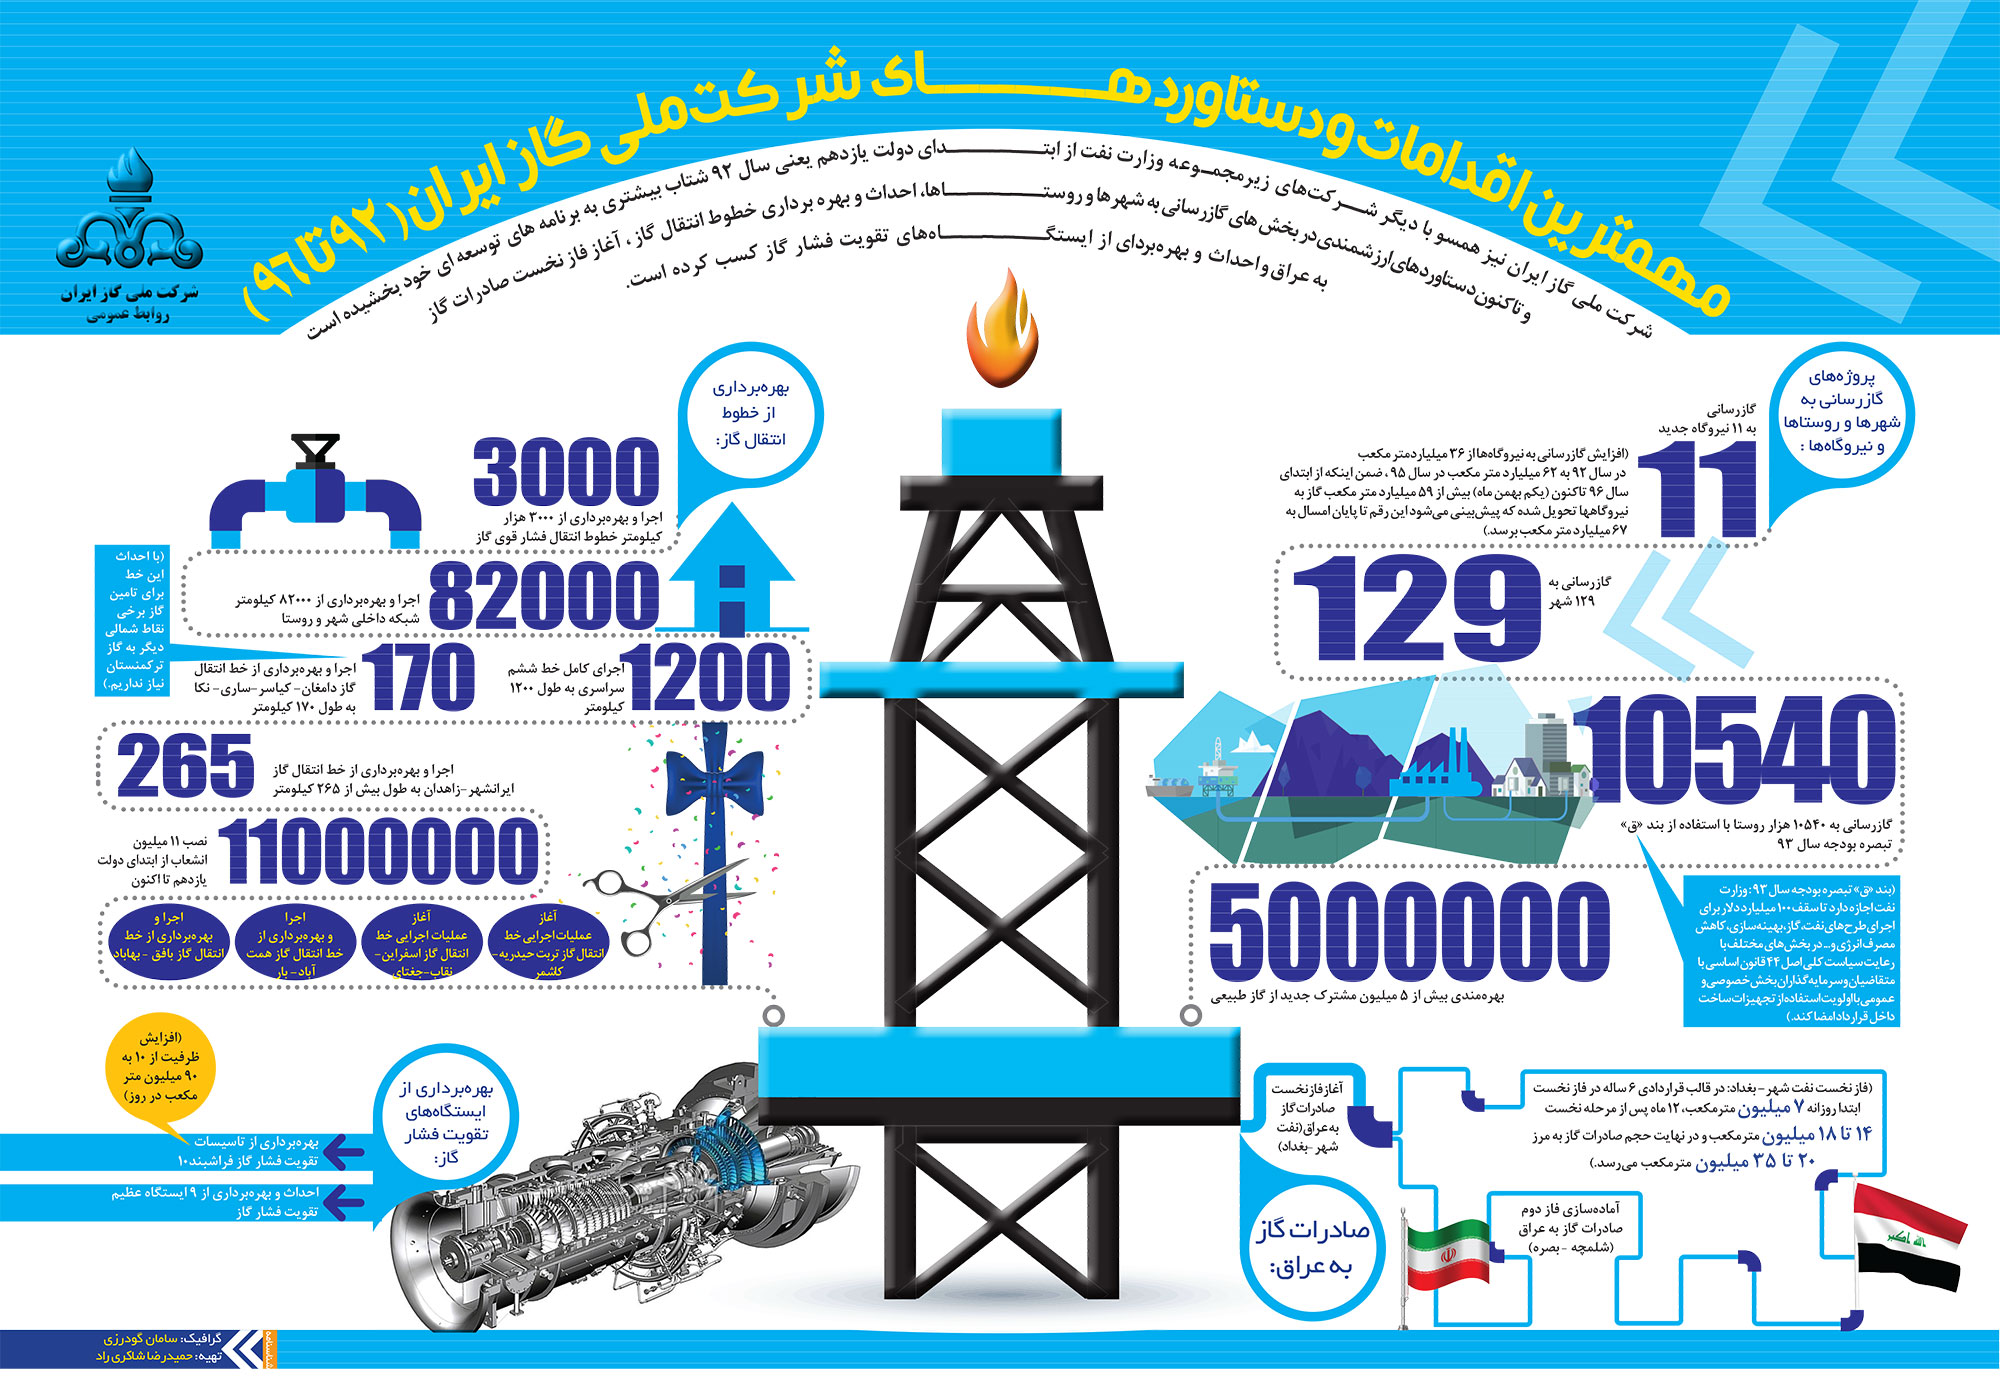 مهمترین اقدامات و دستاوردهای شرکت ملی گاز ایران - 92 تا 96